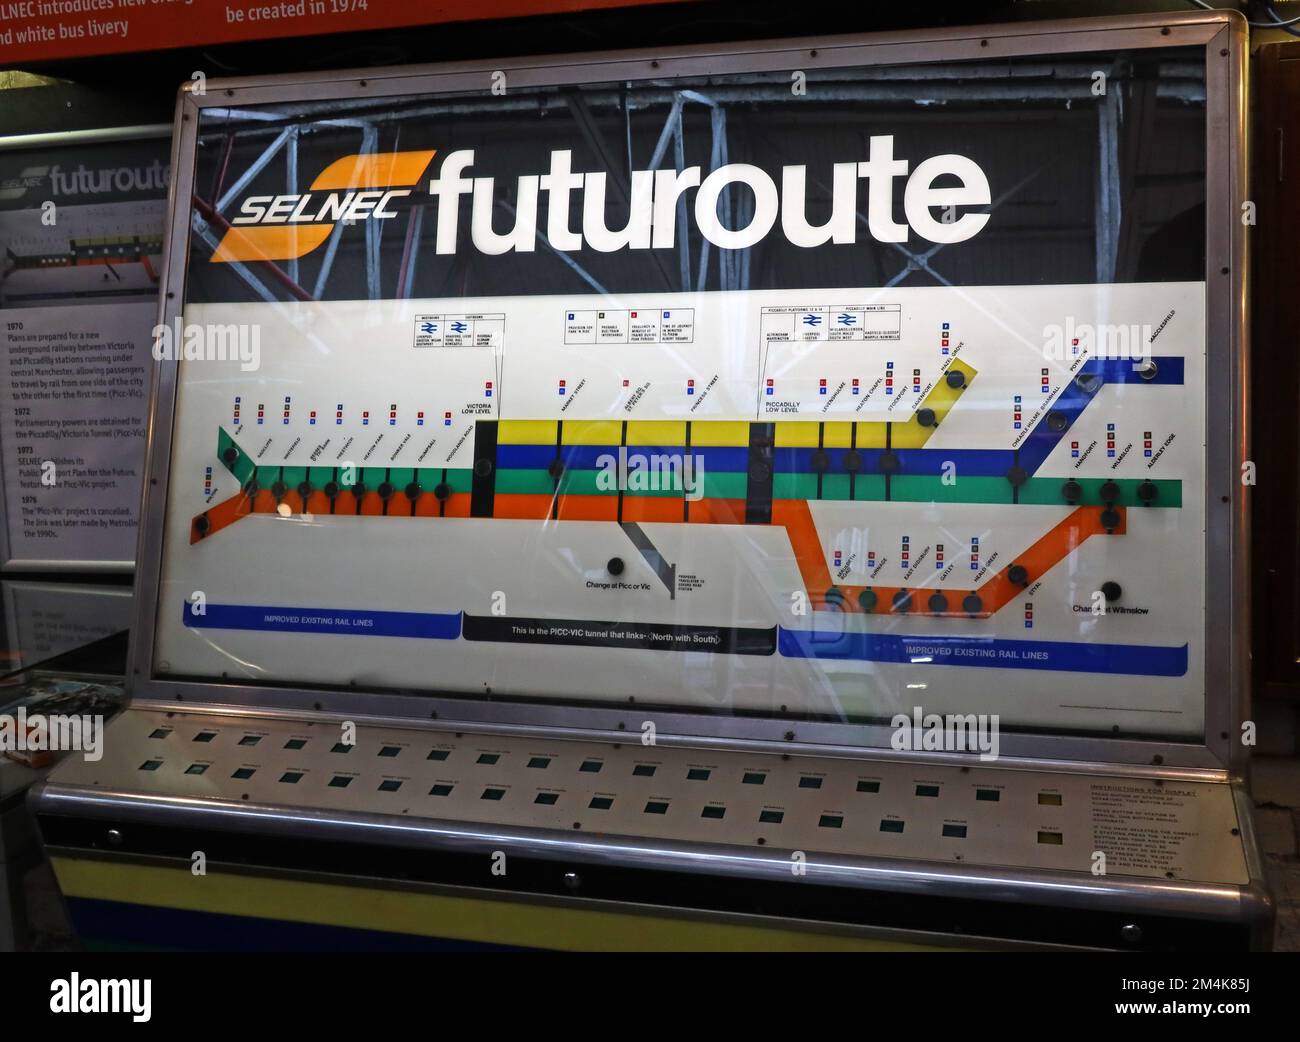 SELNEC Futuroute mostra schematica, collegamenti di trasporto programmati per la stazione di Manchester, Inghilterra, Regno Unito Foto Stock